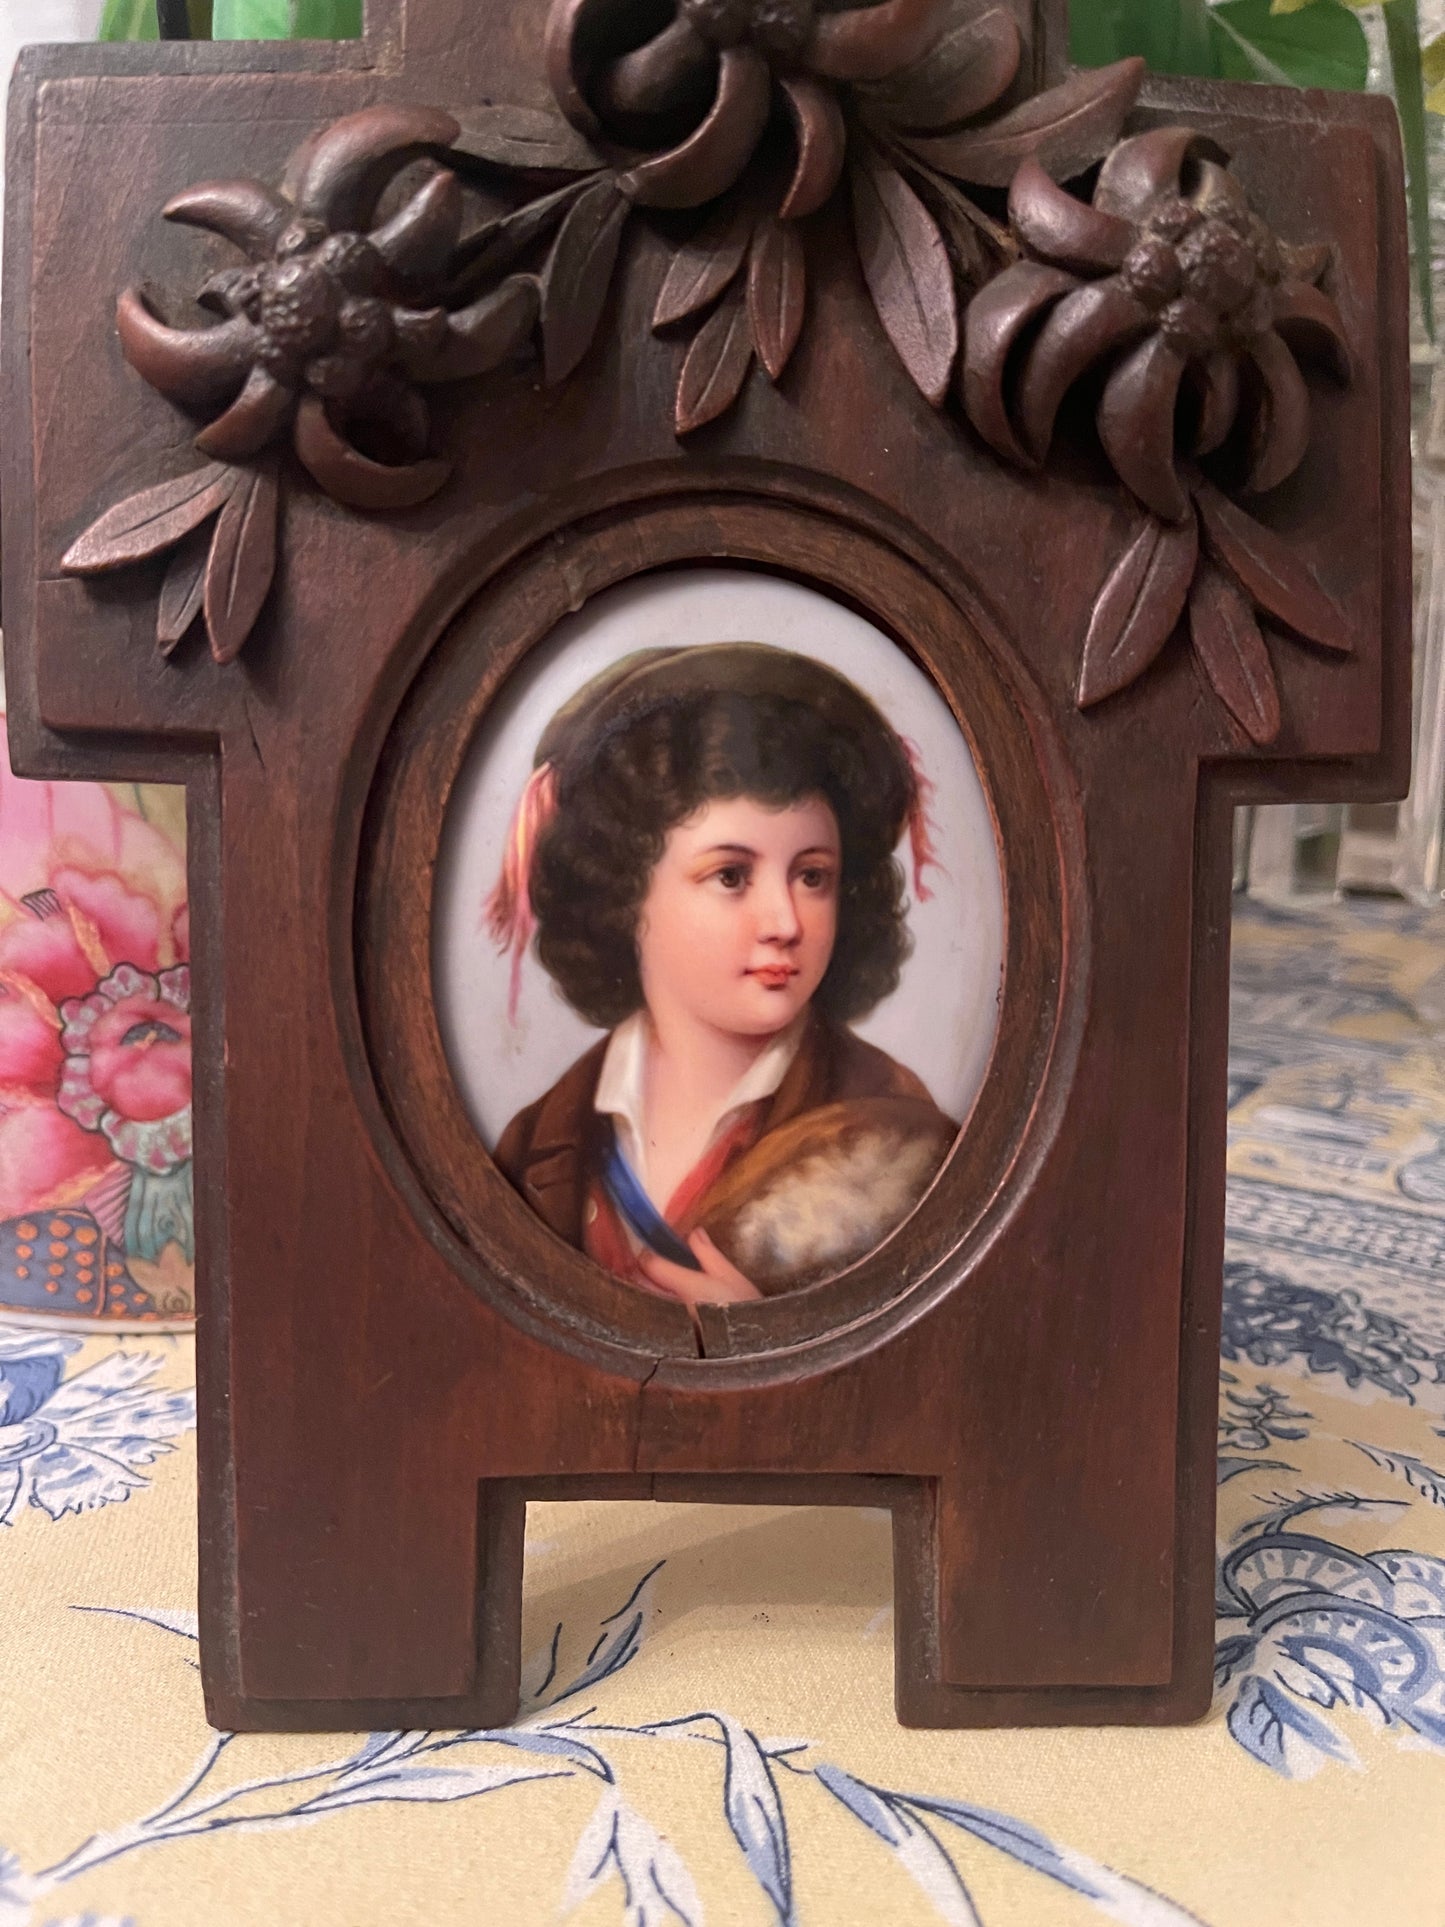 Pair of Antique Porcelain Portraits, Ornate German Black Forest Wood Frame, Black Forest Wood Carved Frame German Antique